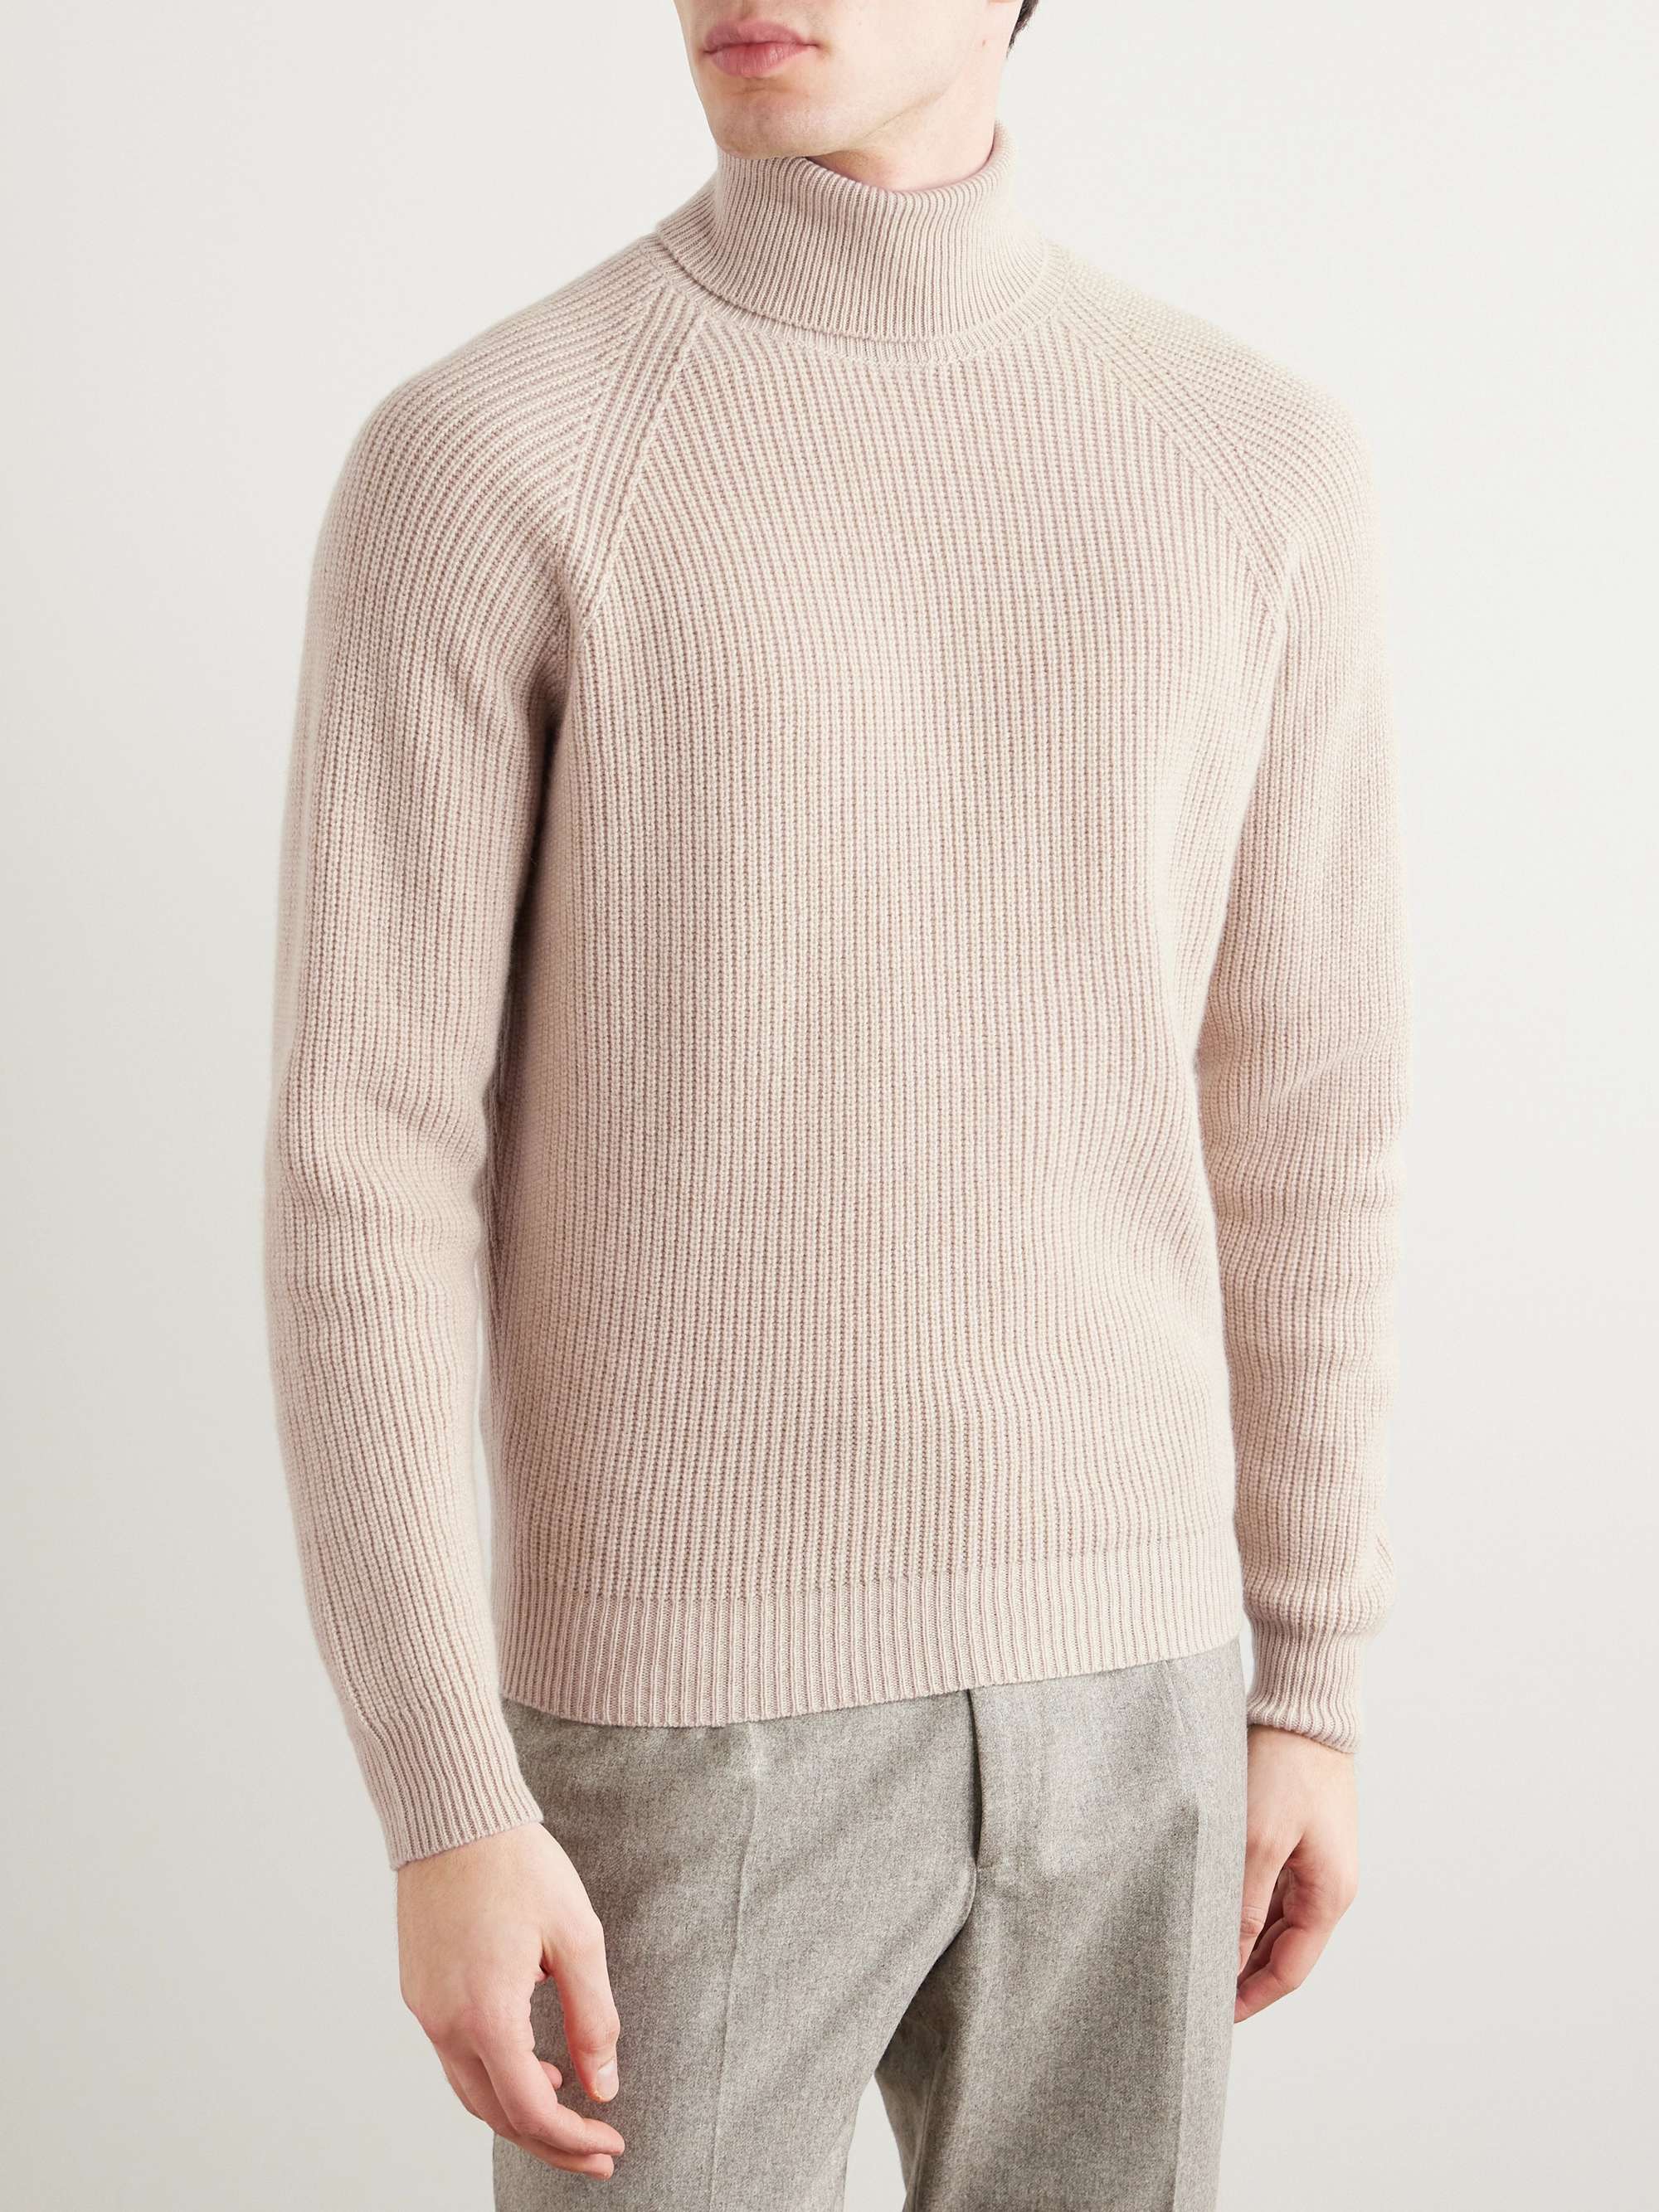 SAMAN AMEL Ribbed Cashmere Rollneck Sweater for Men | MR PORTER